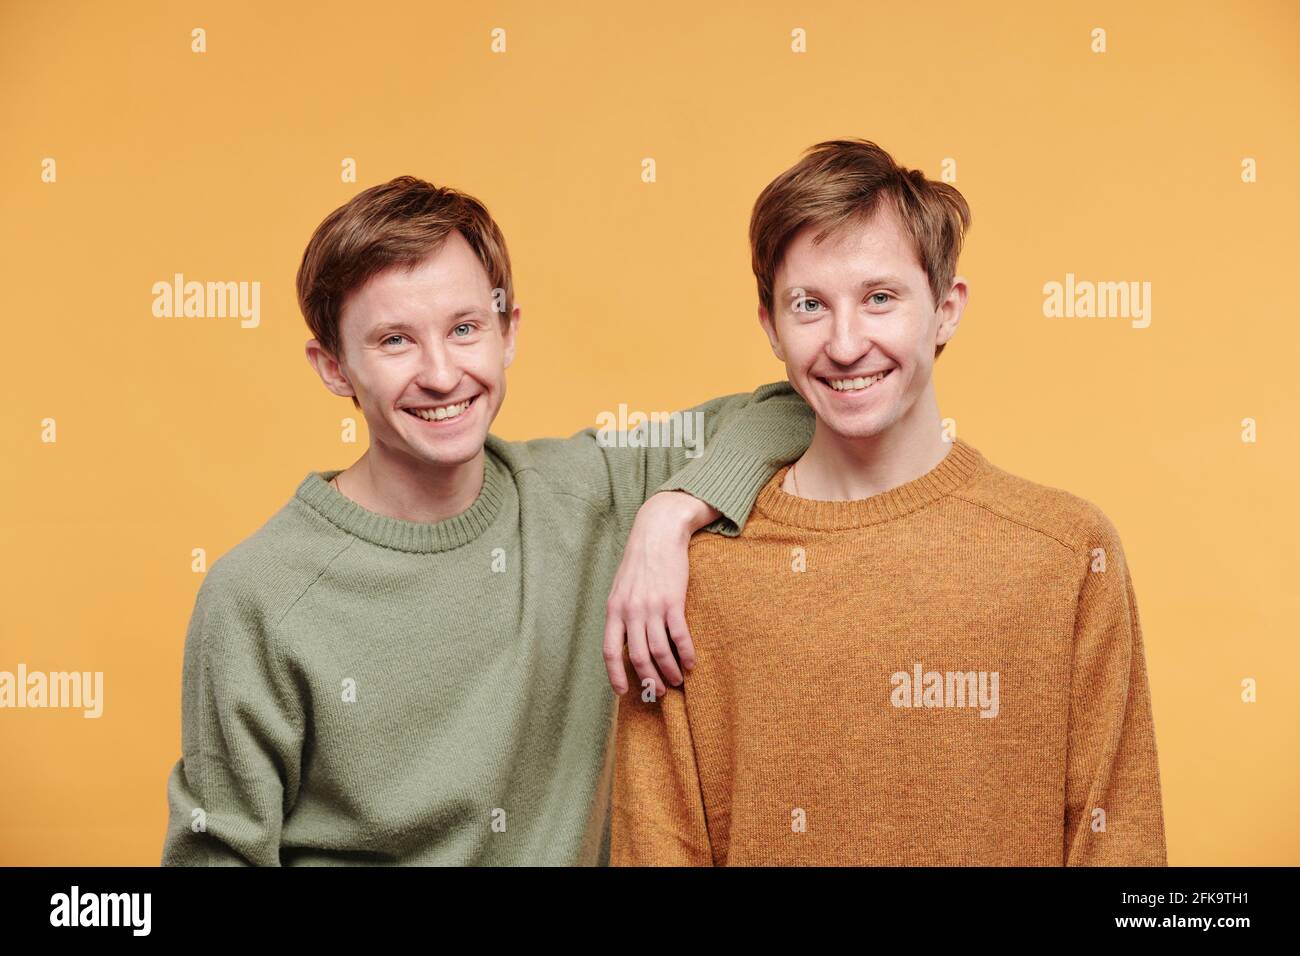 Porträt eines glücklichen jungen Mannes in legerem Pullover, der sich anlehnt Schulter des Zwillingsbruders auf orangefarbenem Hintergrund Stockfoto